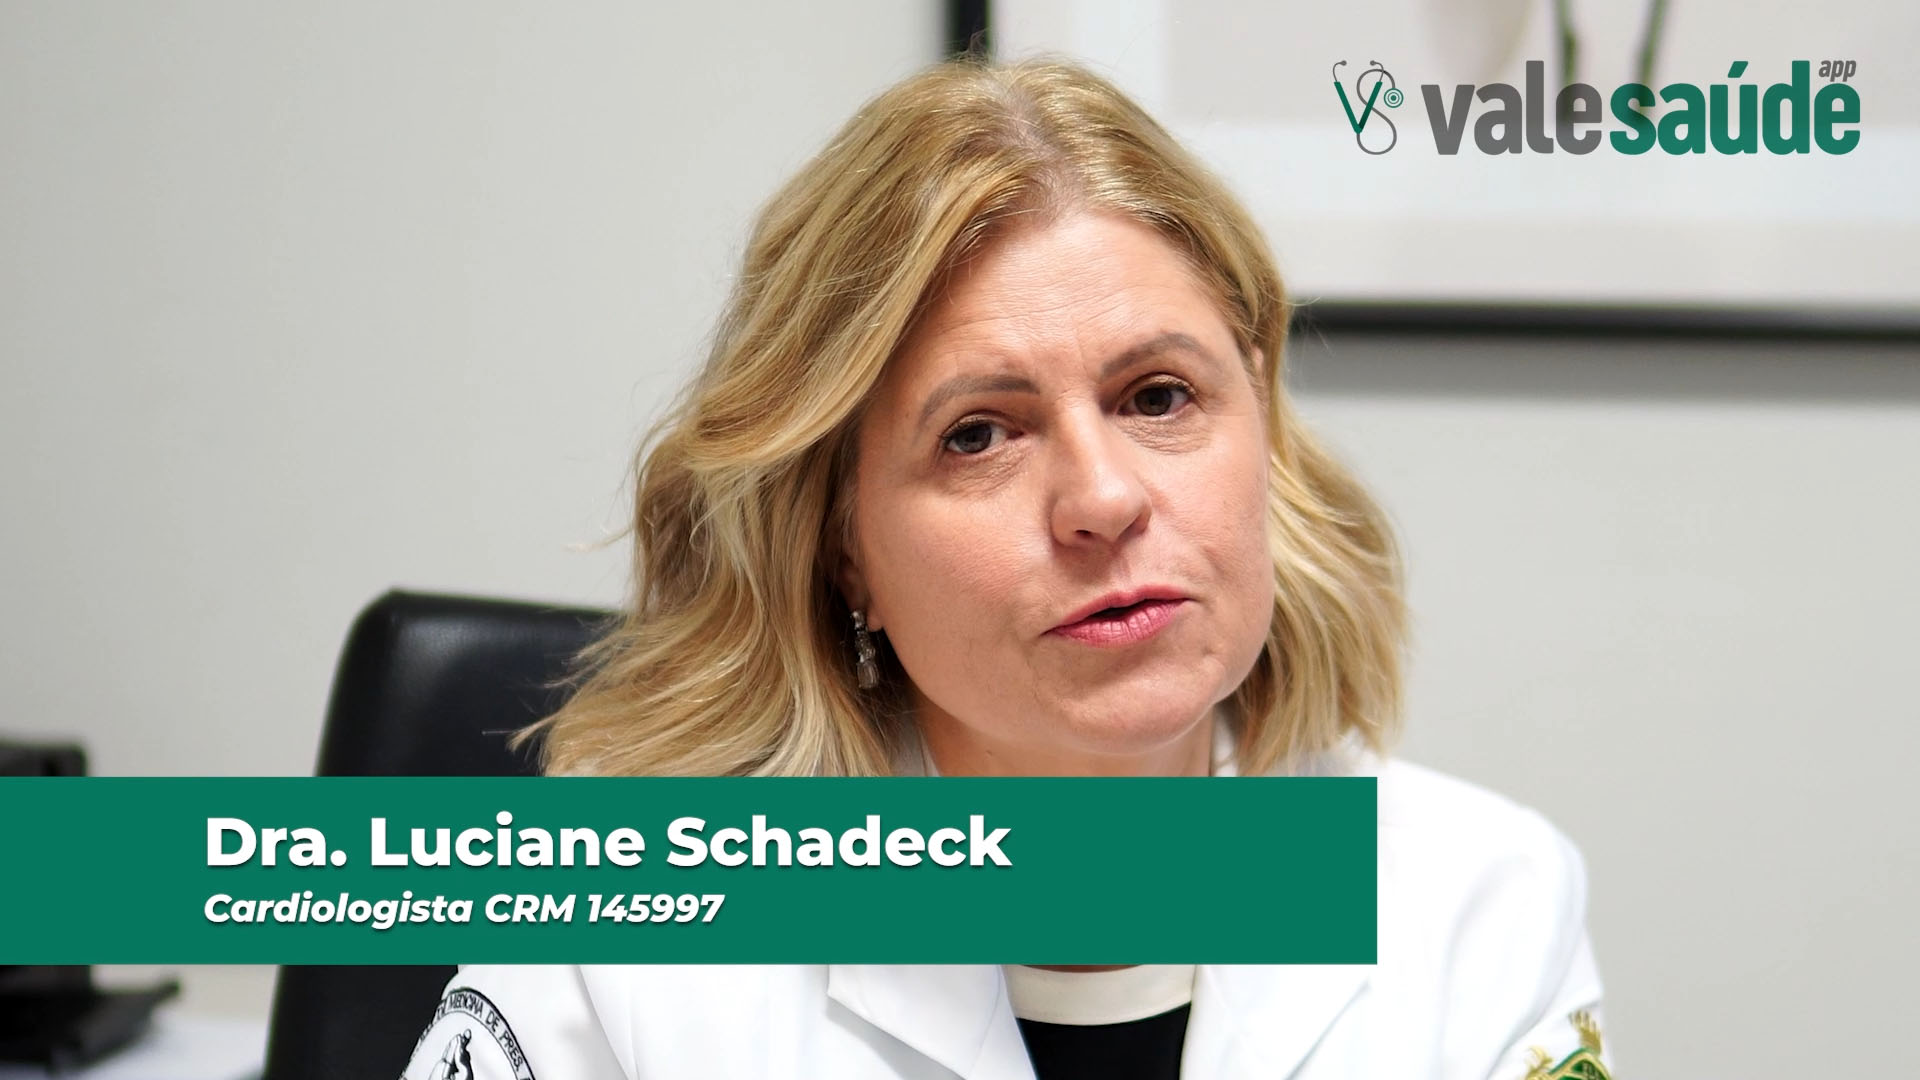 Cuidados com a hipertensão - Dra. Luciane Schadeck